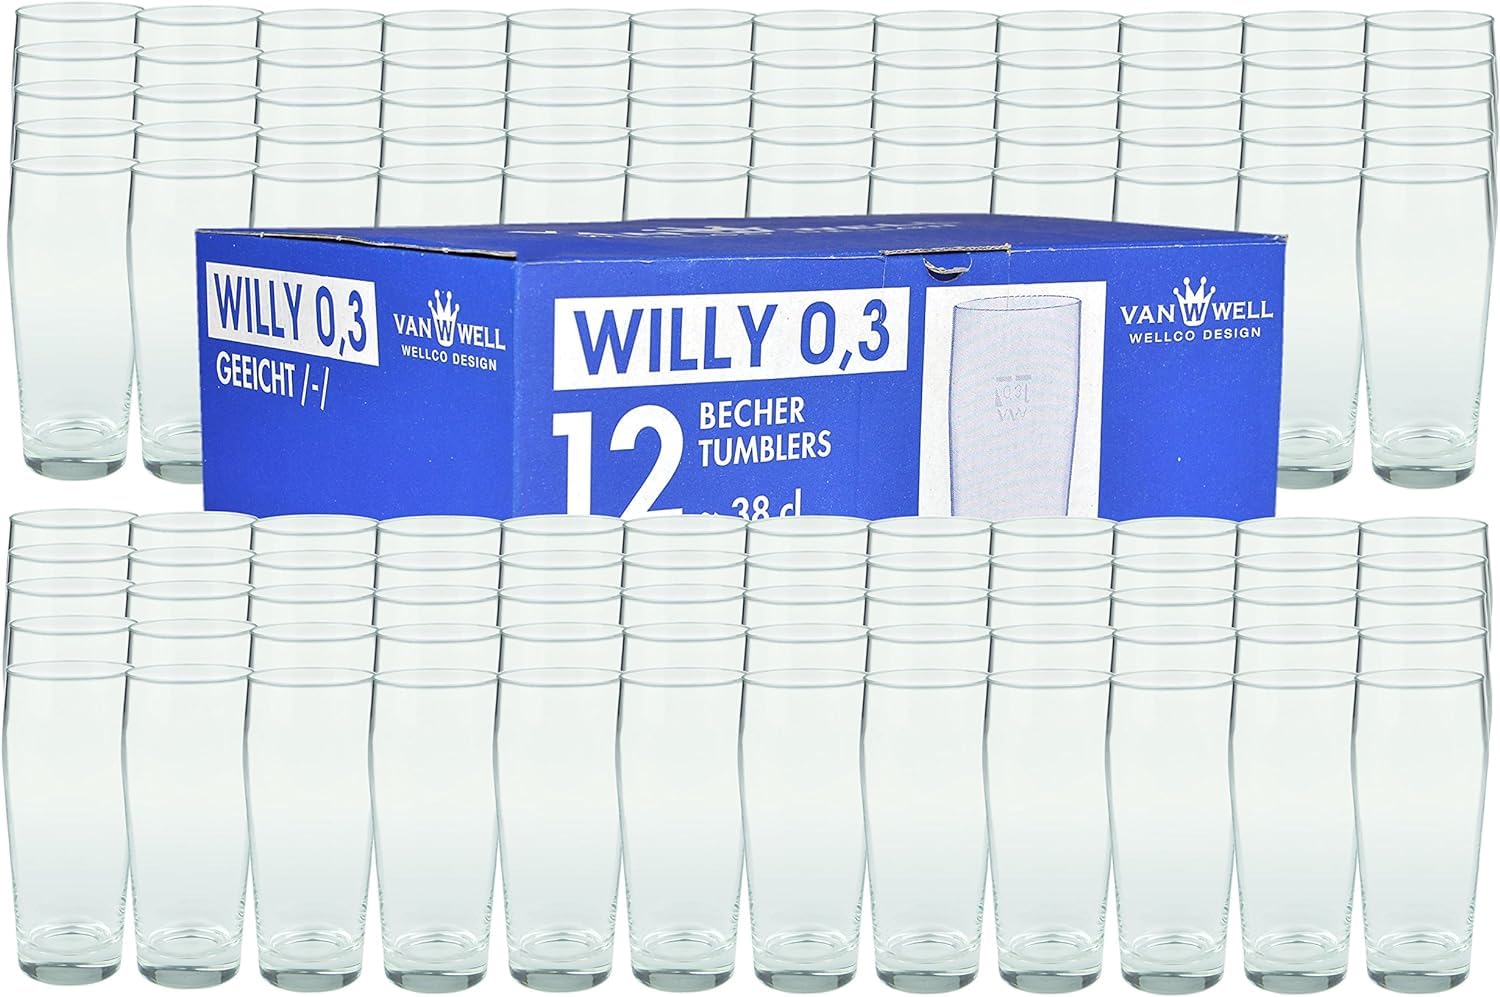 Van Well Willibecher 0,3l 120 Stk - Premium Biergläser 0,3 Liter - Robustes Bierglas, Spülmaschinengeeignet, Geeicht - Pint Gläser in Gastronomiequalität - Trinkglas 300 ml für Gastronmie und Zuhause